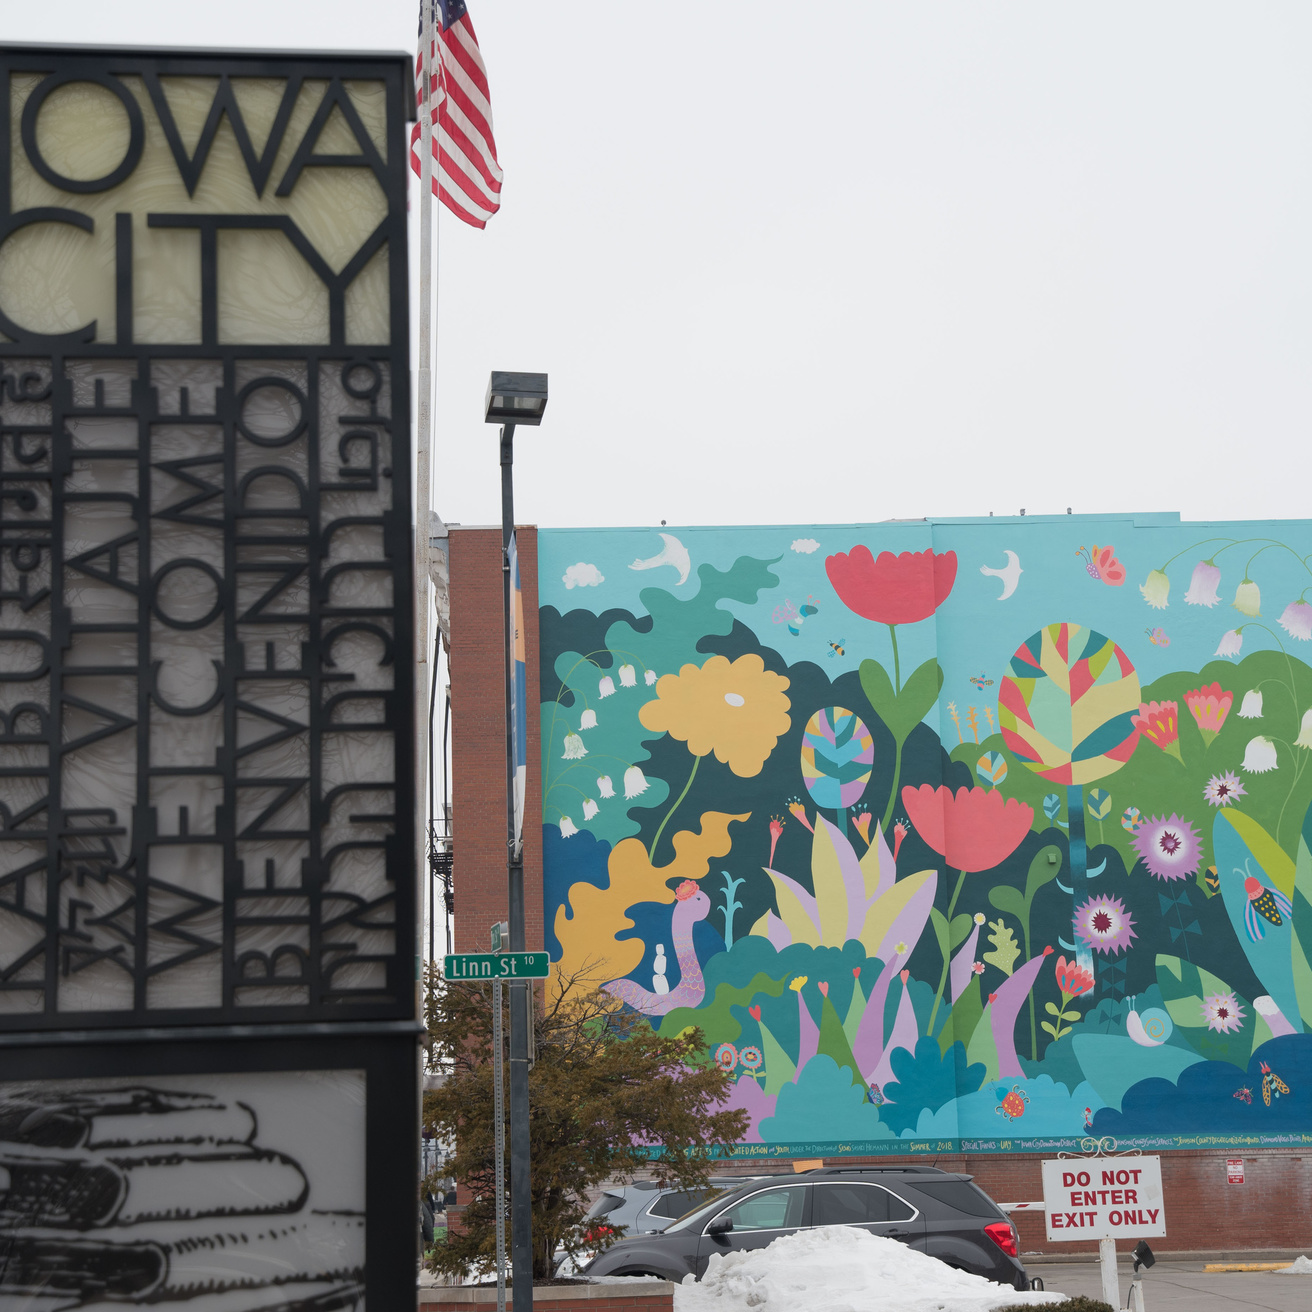 Downtown Iowa City Art